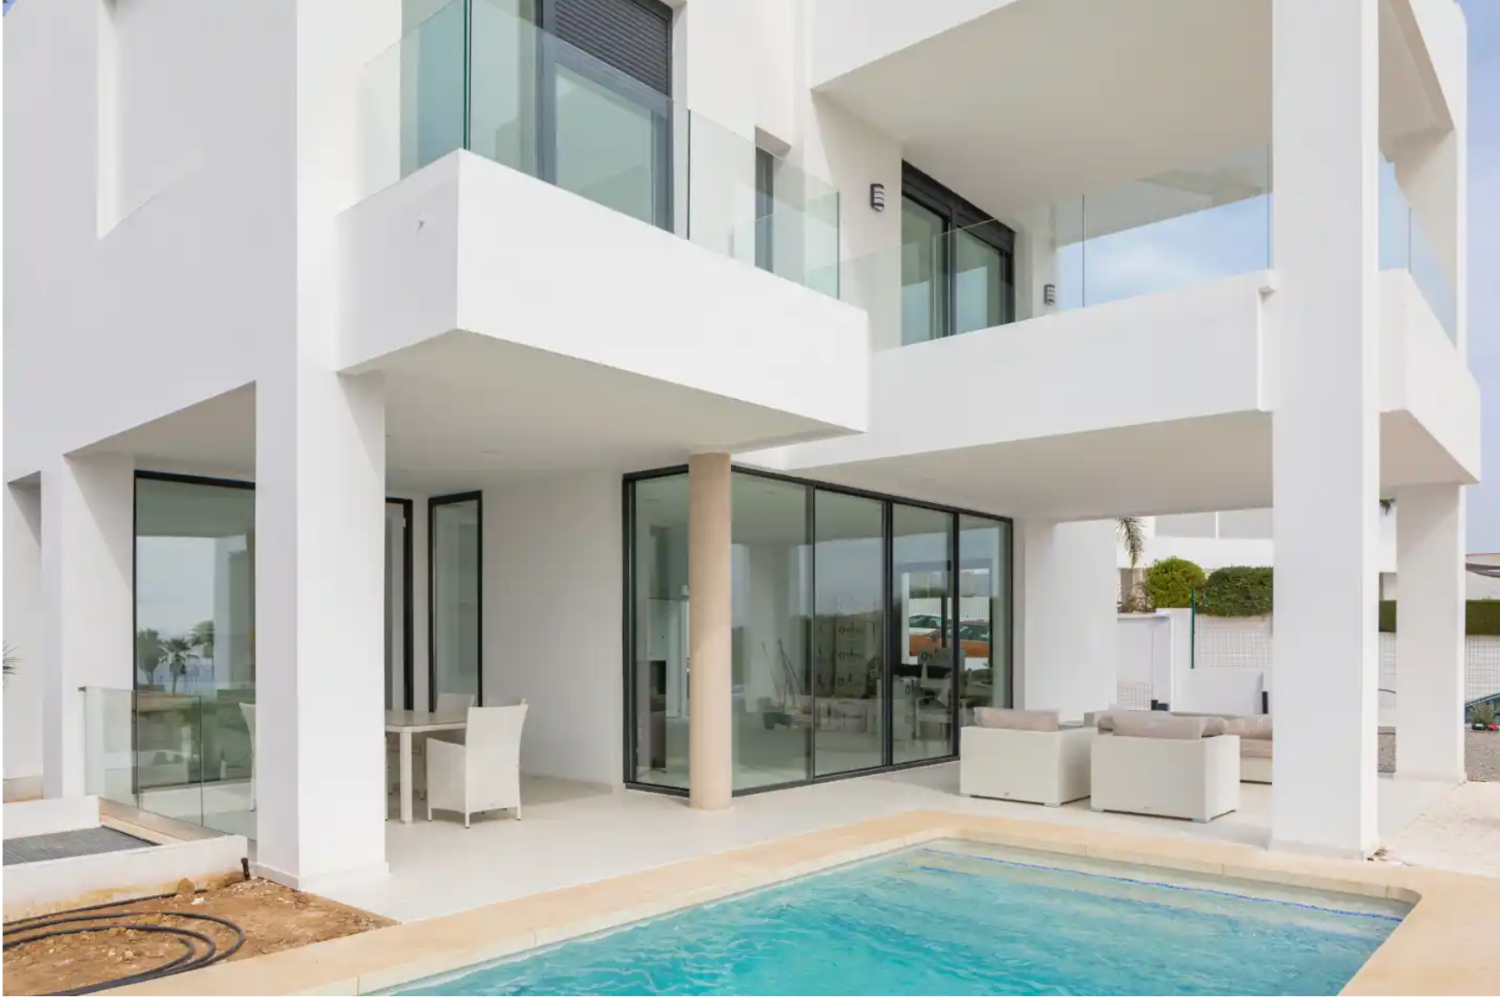 Villa moderna con vistas panorámicas al mar Mediterráneo - Costa del Sol